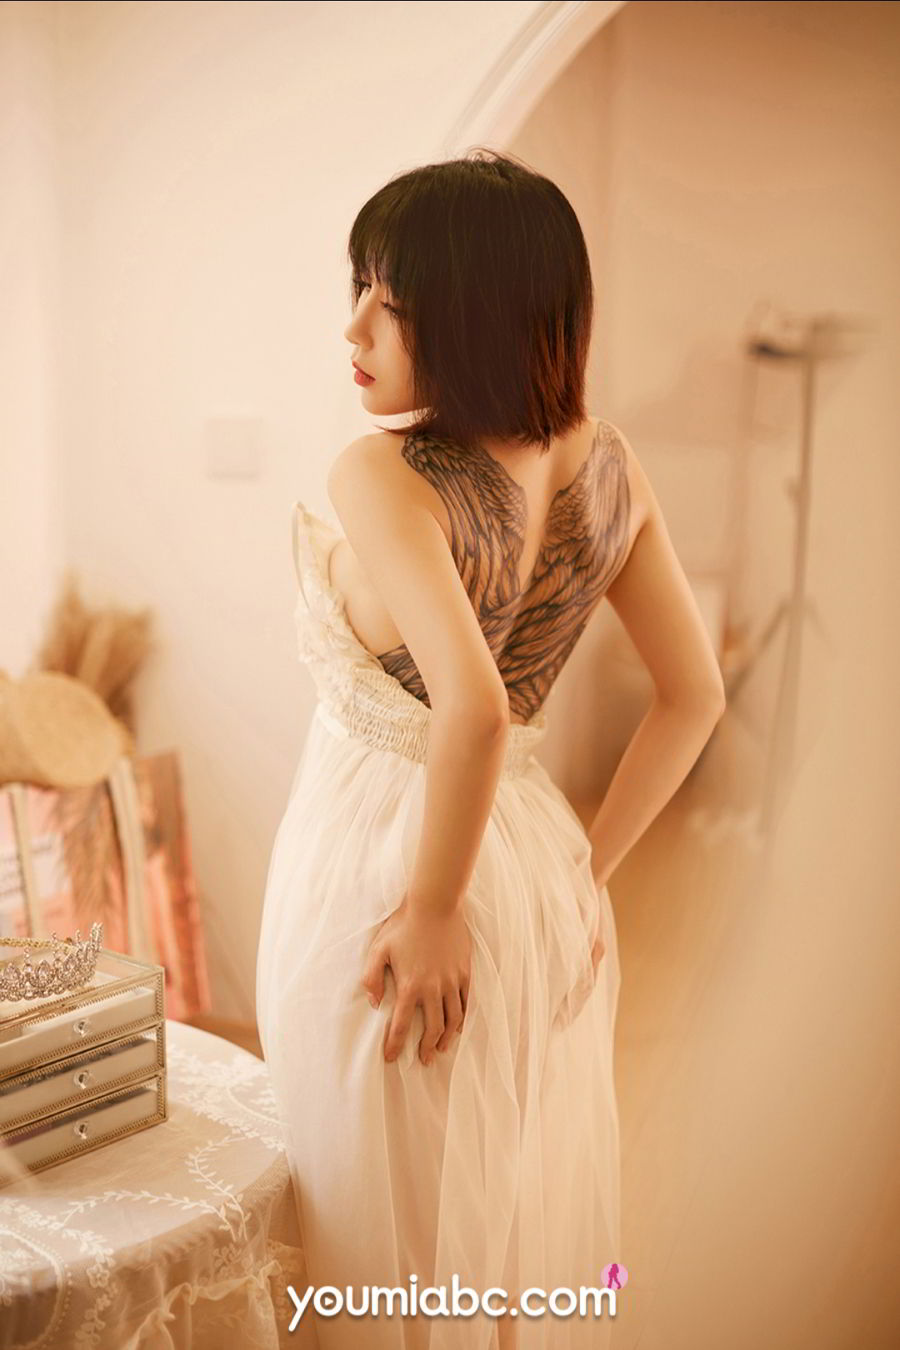 美女模特安妮斯朵拉纯白长裙+傲人双峰情趣写真